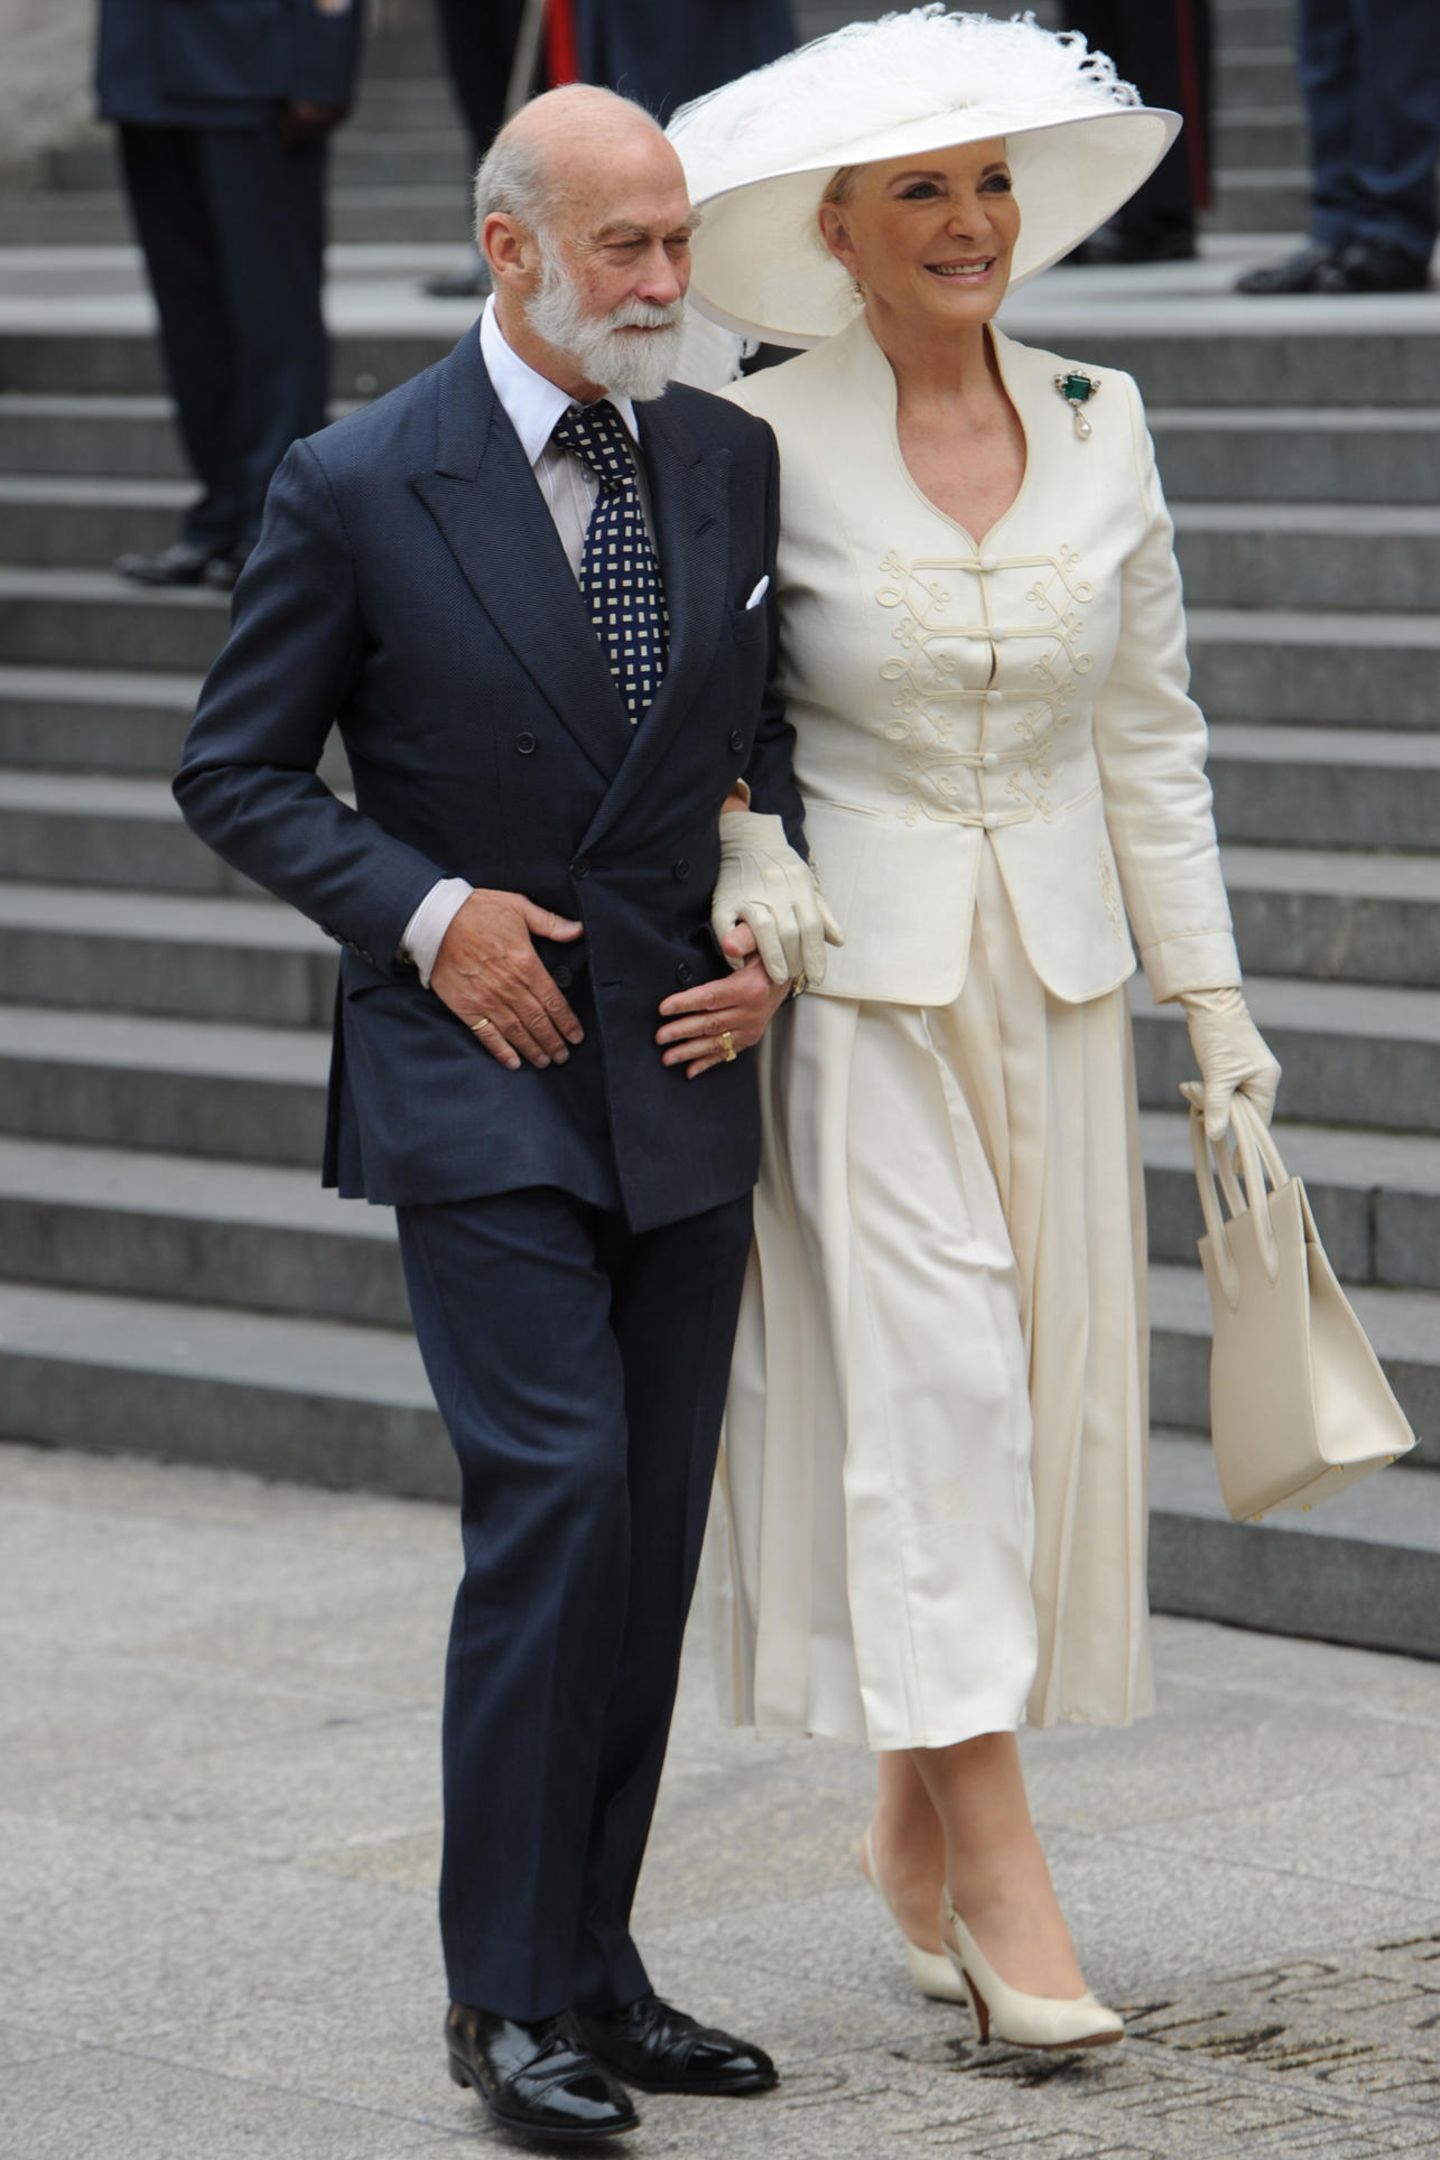 Die Eltern der Braut dürfen an so einem wichtigen Tag natürlich nicht fehlen: Prinz und Prinzessin Michael von Kent werden mit Sicherheit die Hochzeit ihrer Tochter Lady Gabriella Windsor nicht verpassen.